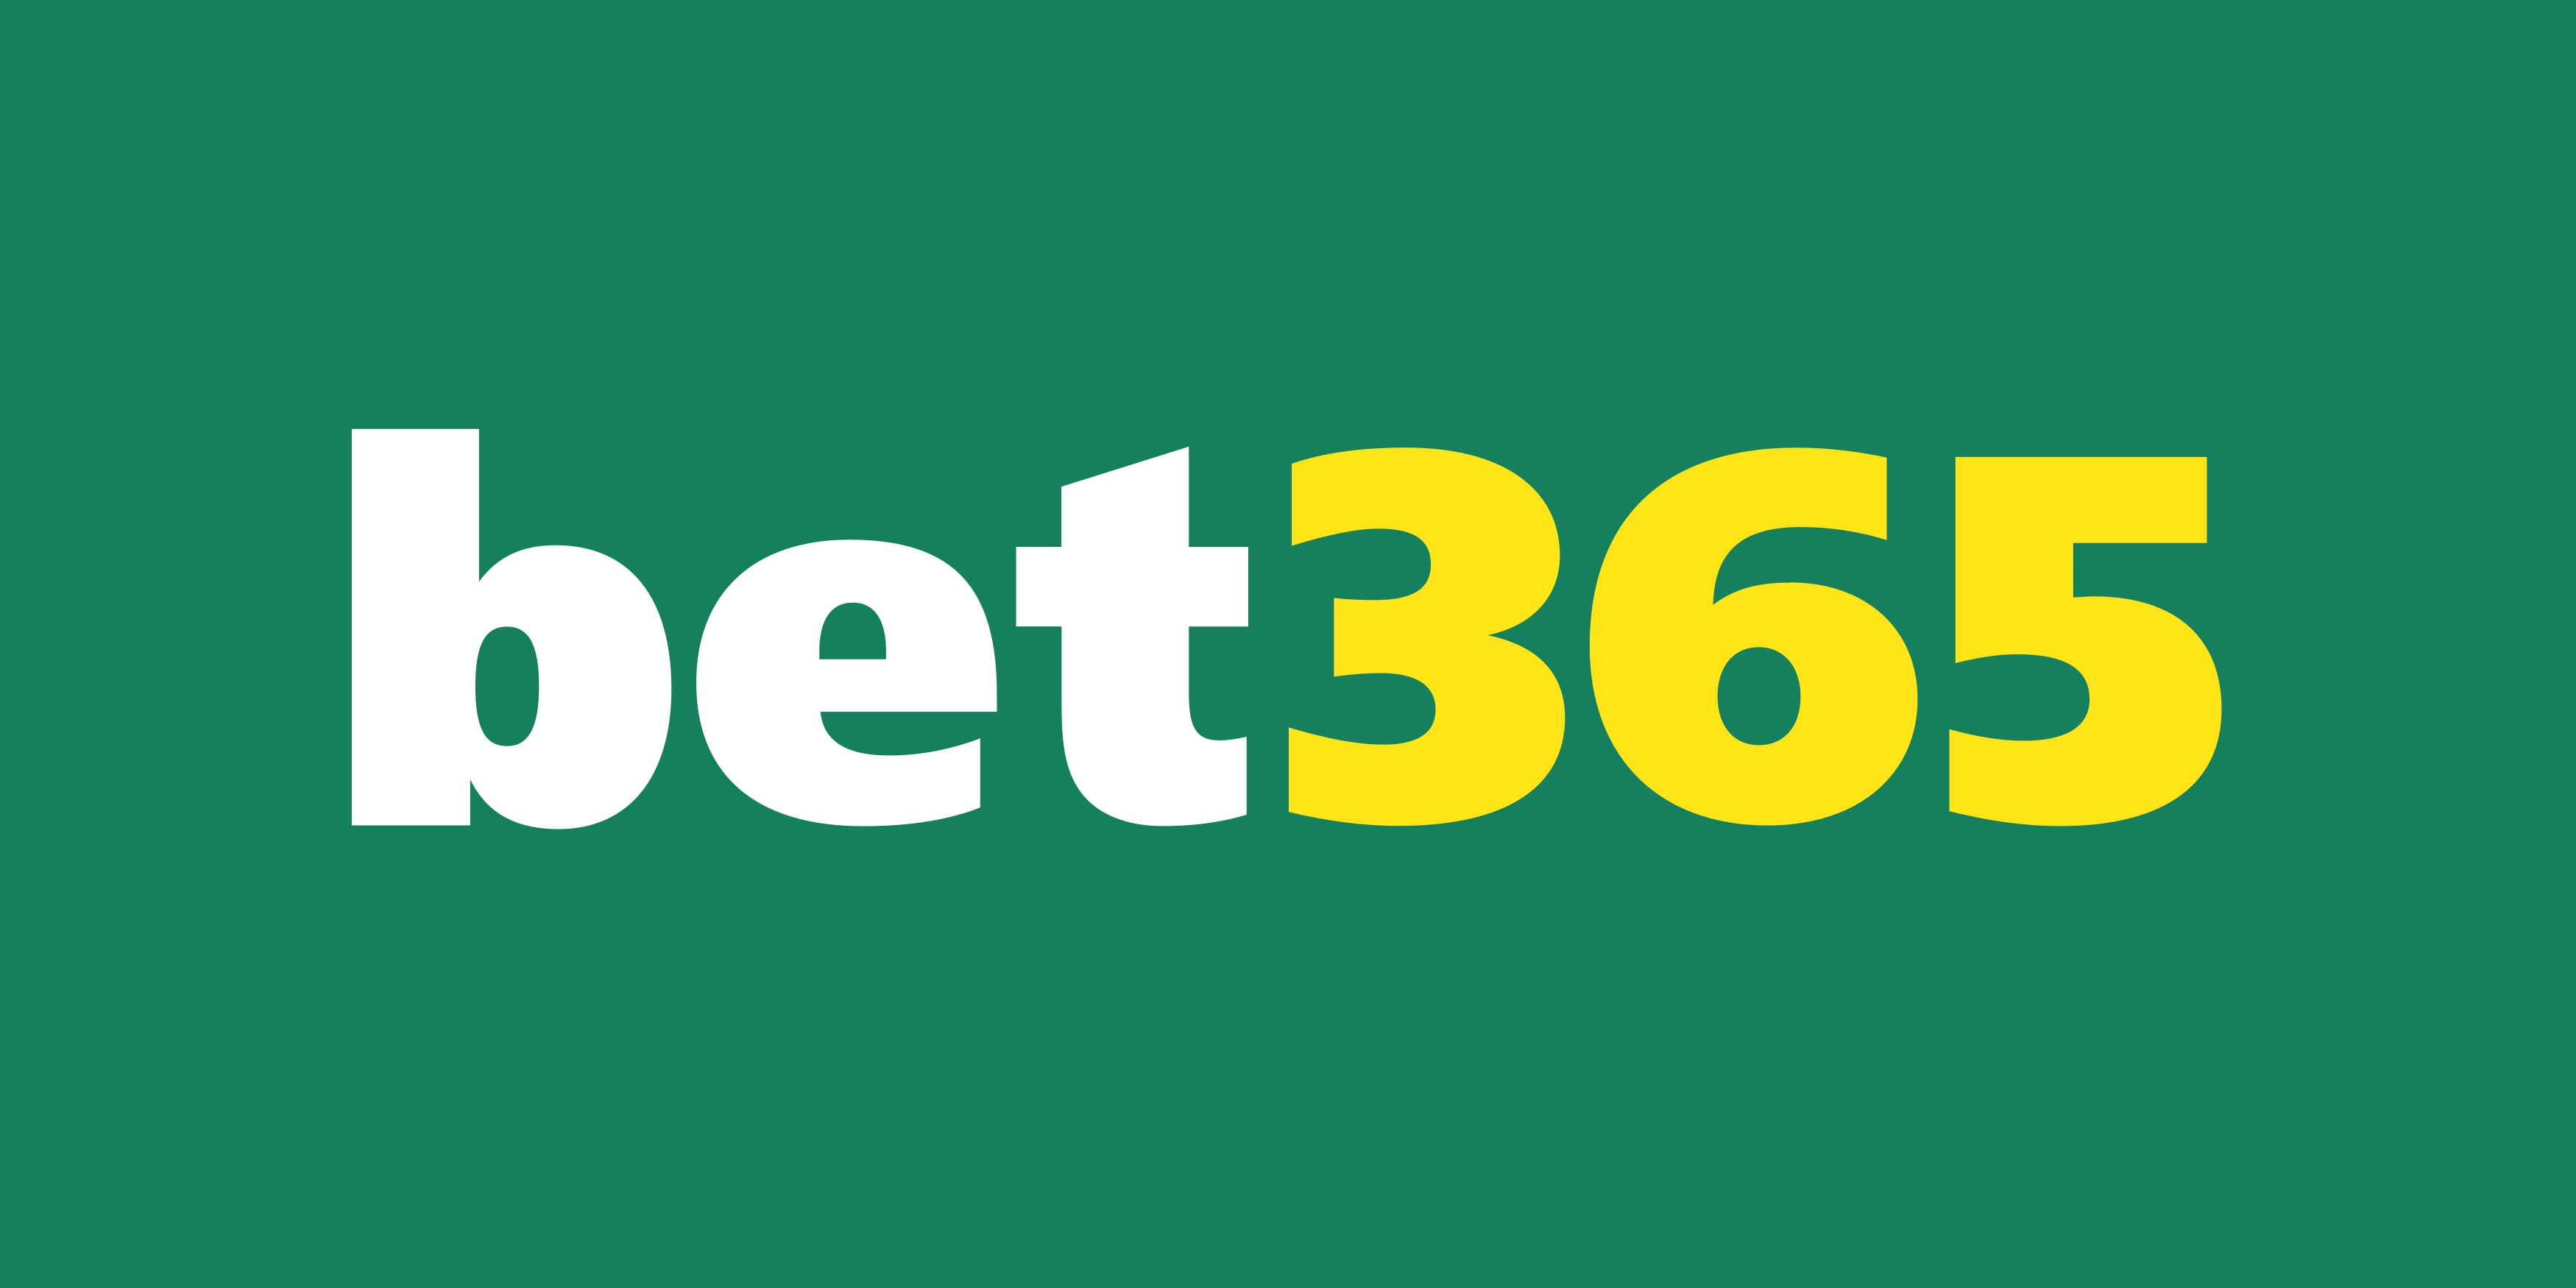 aprenda apostar bet365